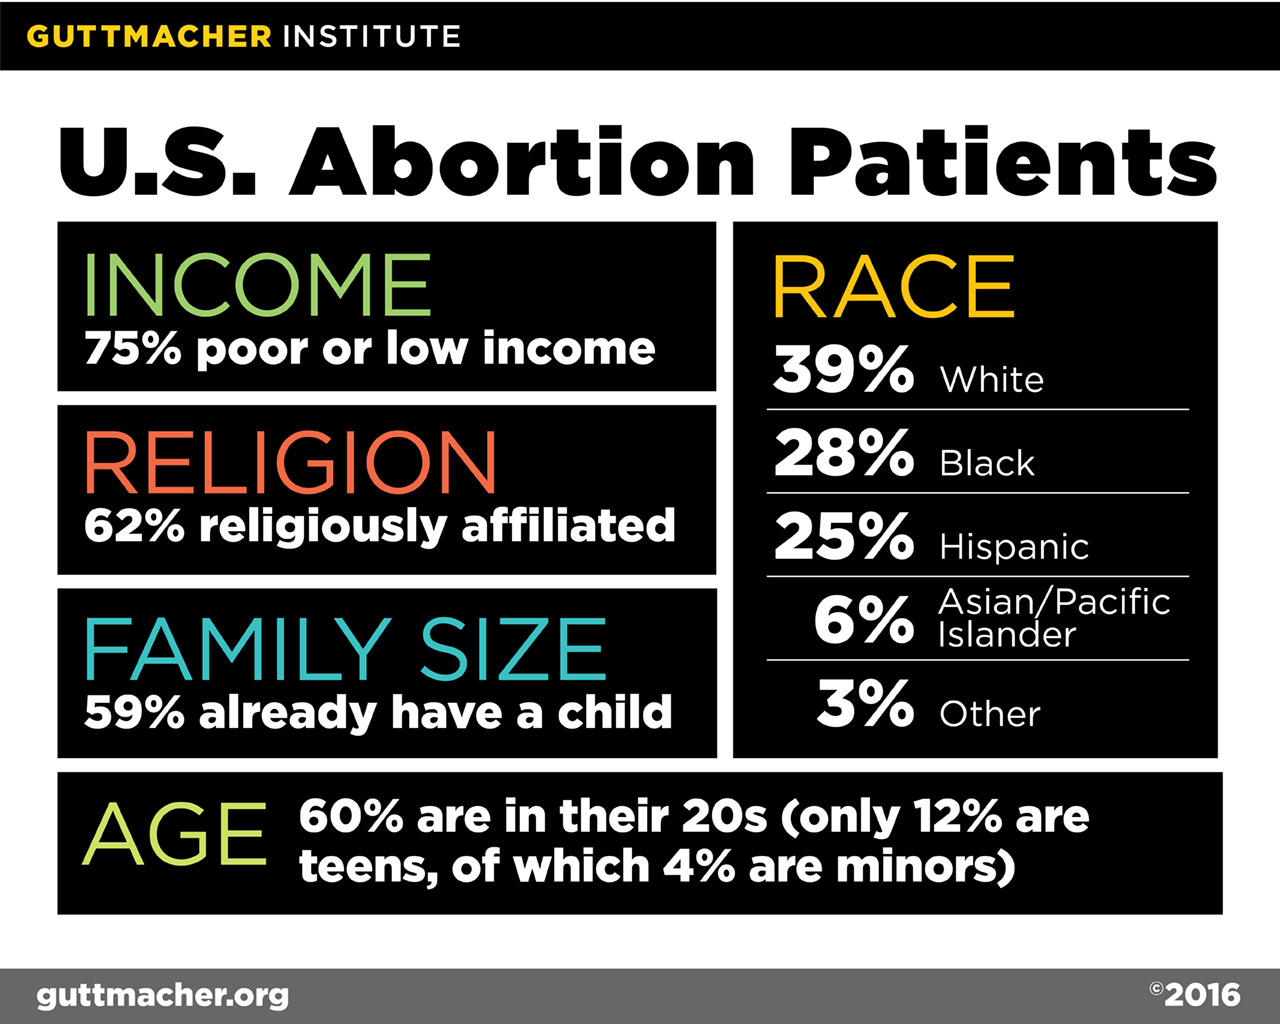 https://www.guttmacher.org/infographic/2016/us-abortion-patients